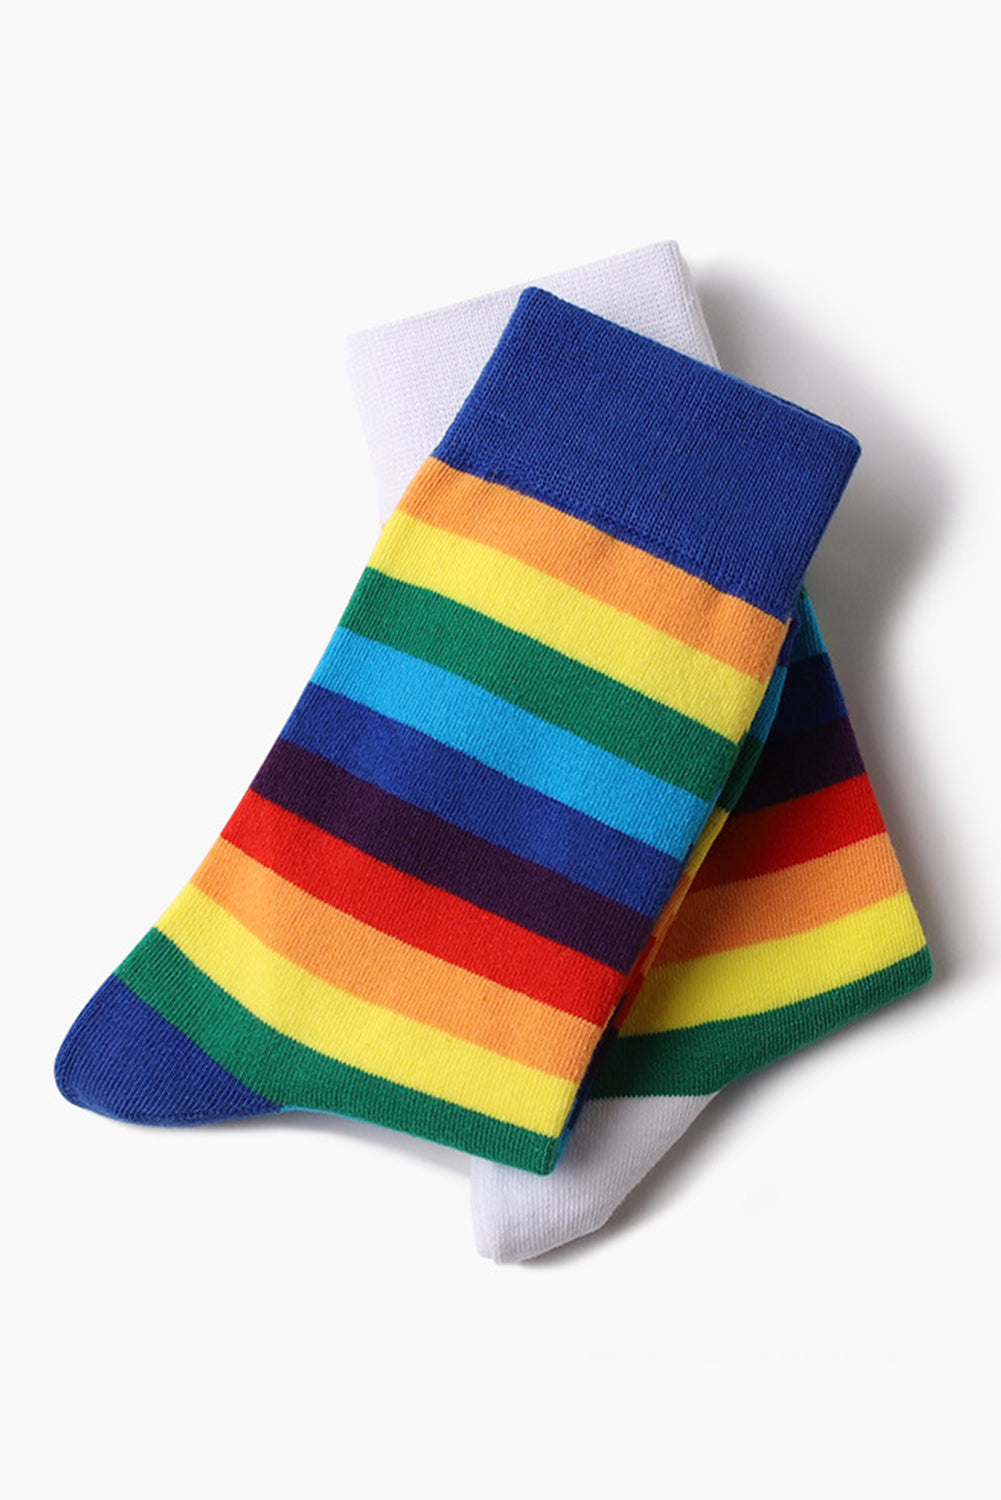 BH041619-4, Sky Blue Pride Sport Socks Men Women Rainbow LGBTQ Accessories Socks